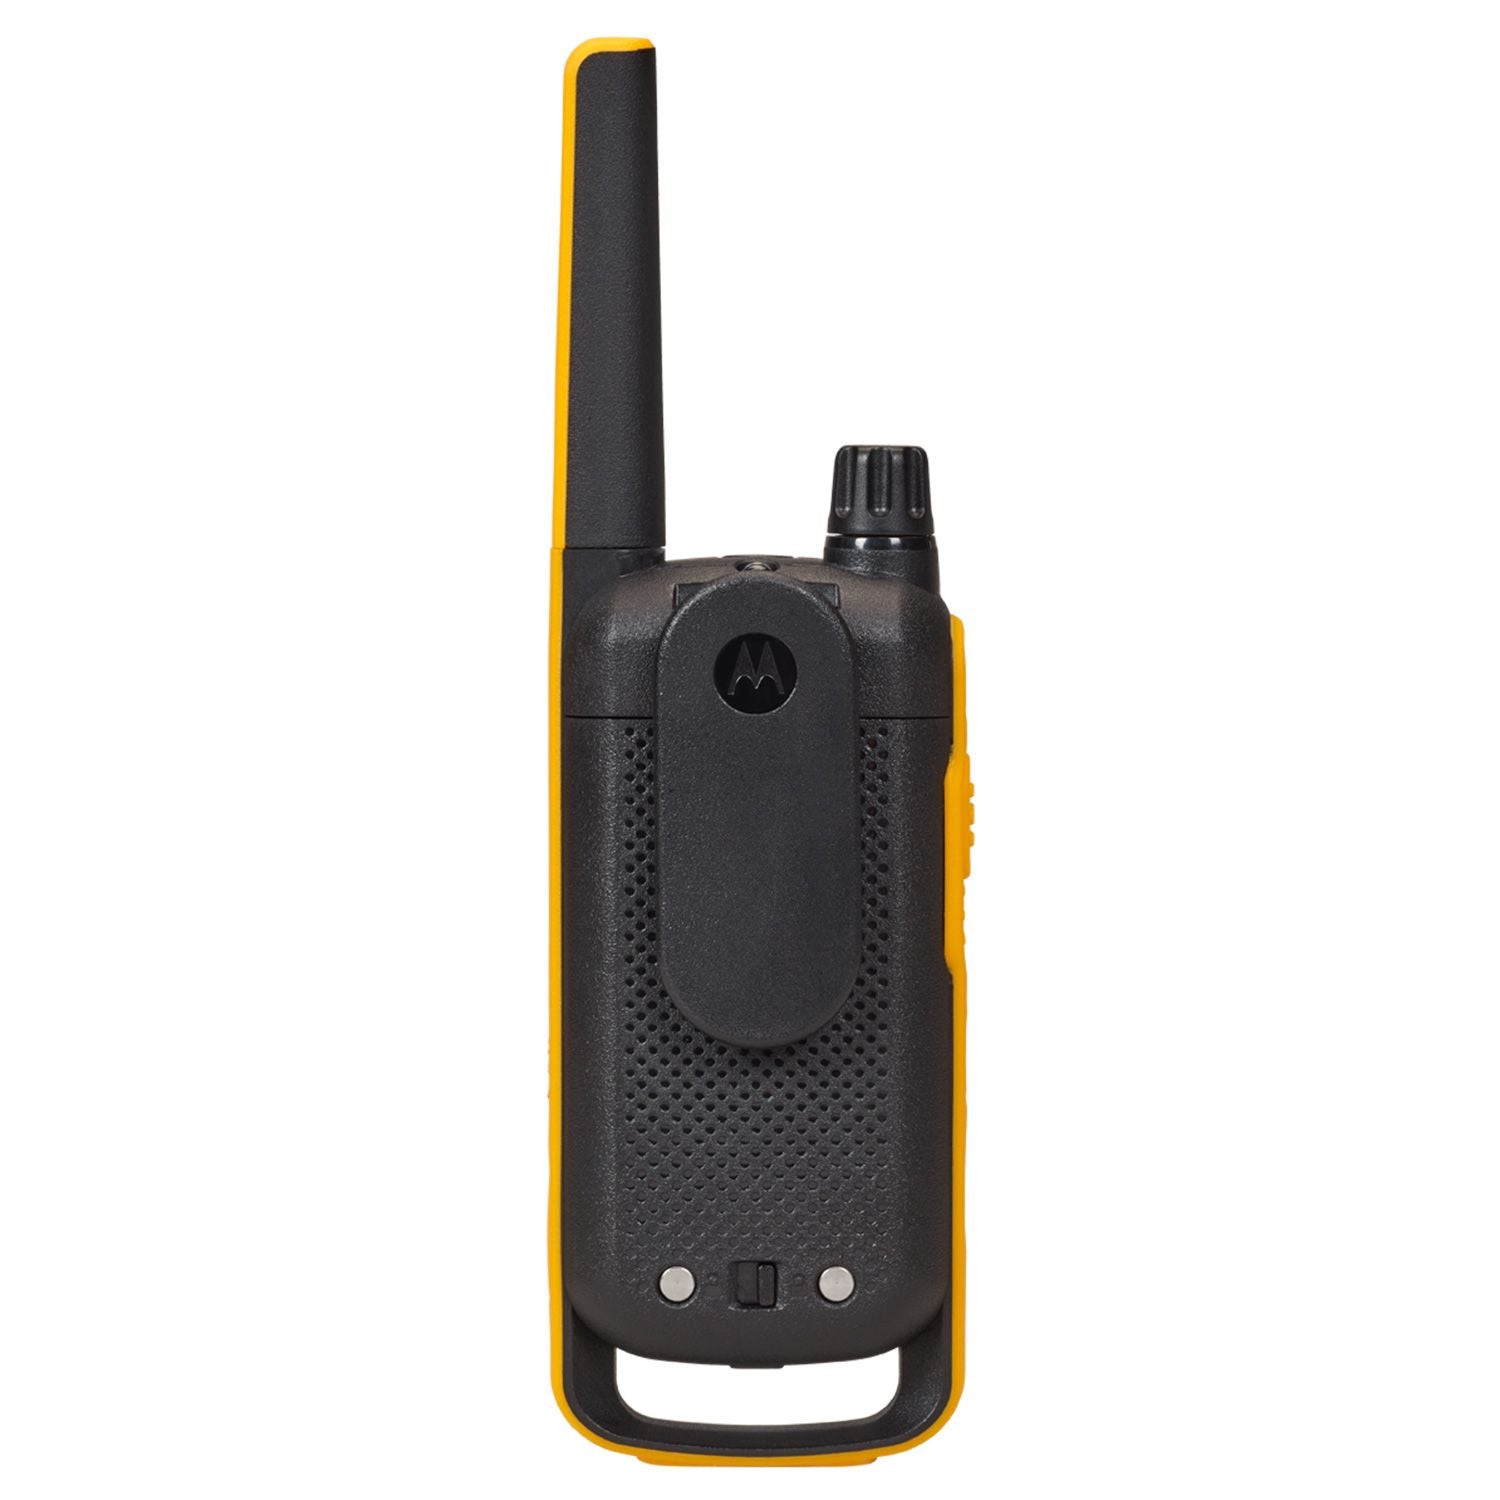 Motorola Solutions - TALKABOUT T470 Series Walkie Talkies, Yellow, Wireless, LED Flashlight